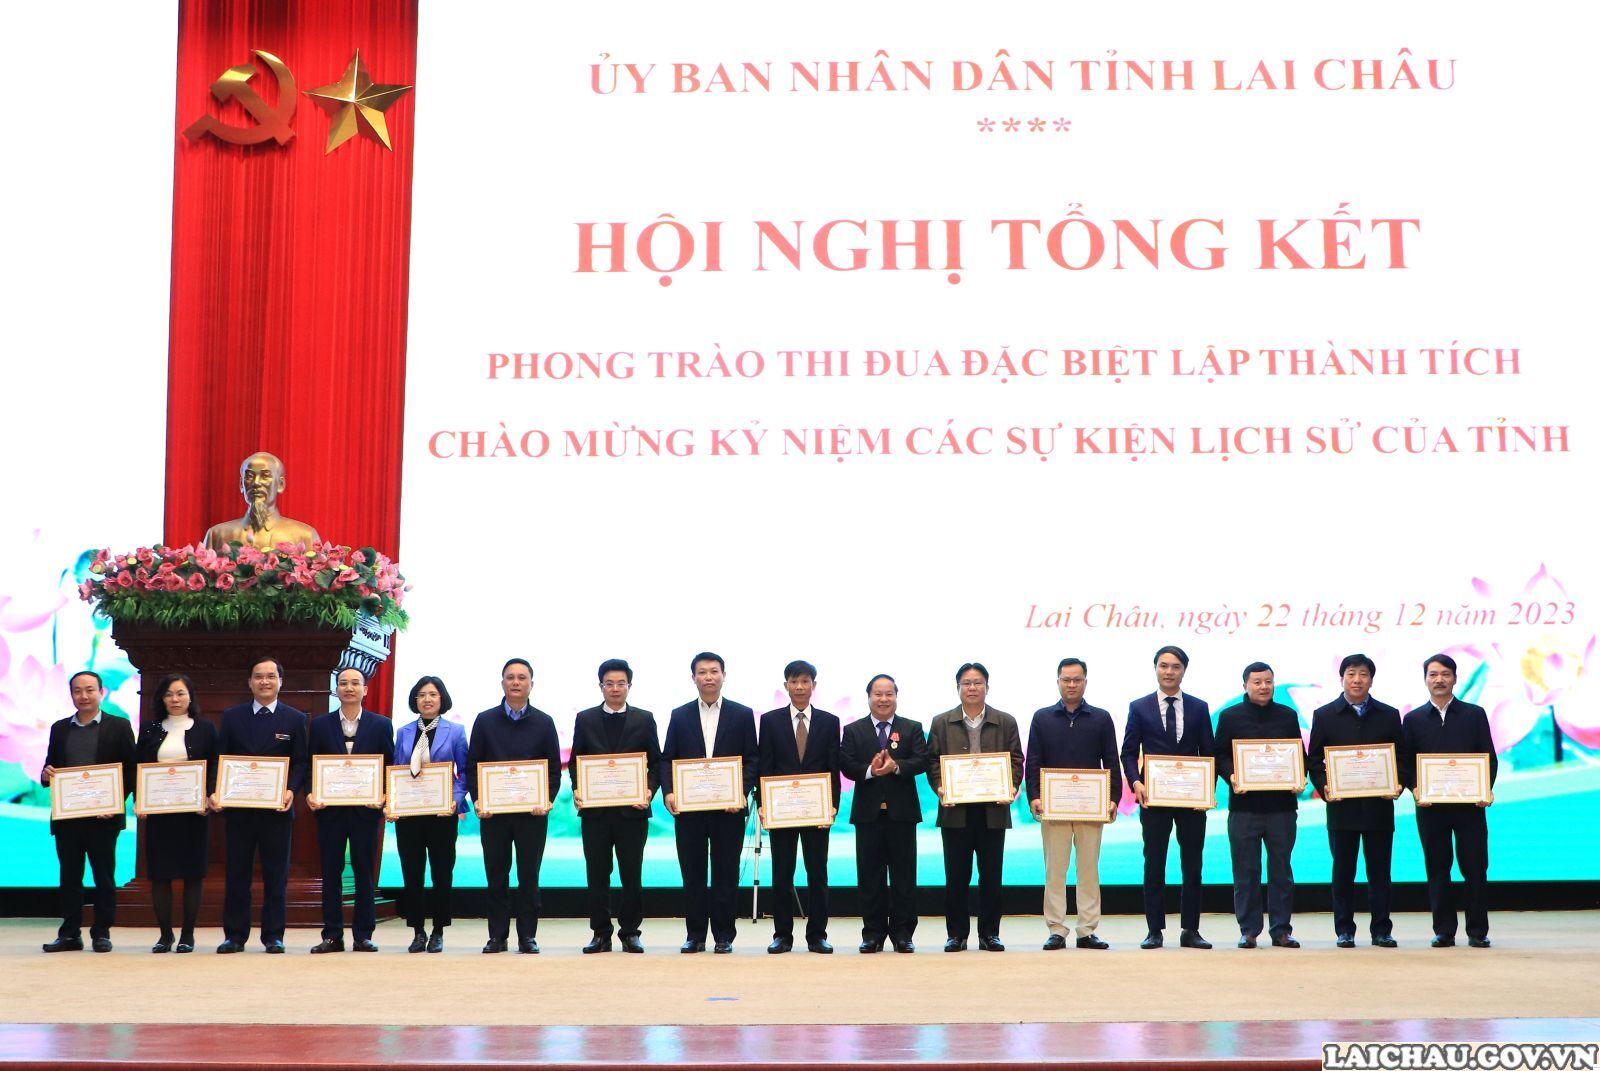 Lai Châu: Tổng kết phong trào thi đua đặc biệt lập thành tích chào mừng kỷ niệm các sự kiện lịch sử- Ảnh 11.